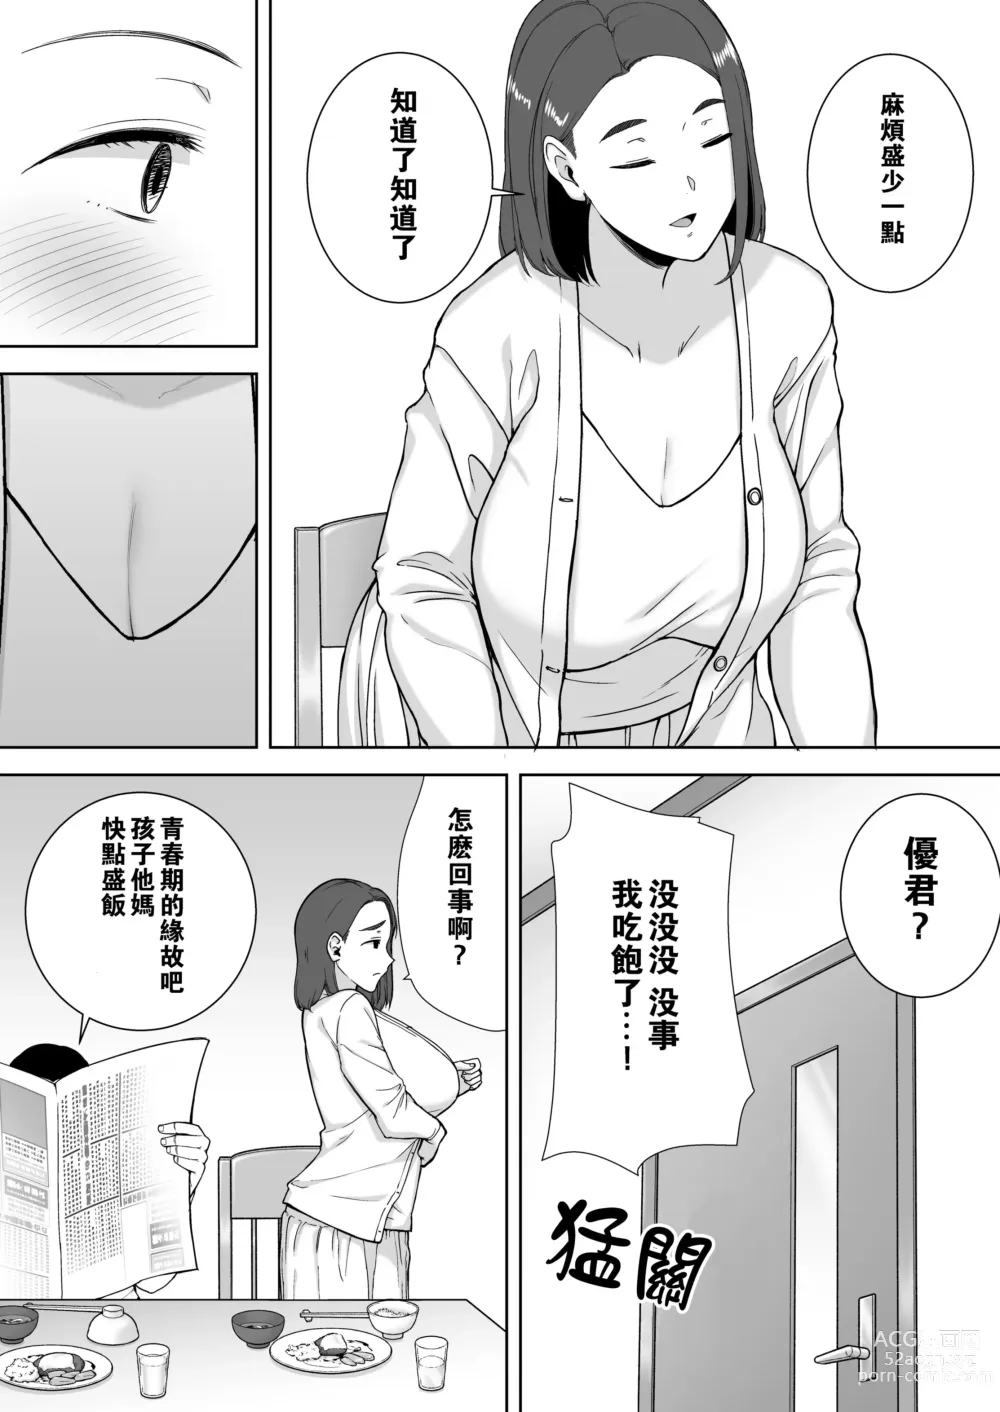 Page 4 of doujinshi 母印堂